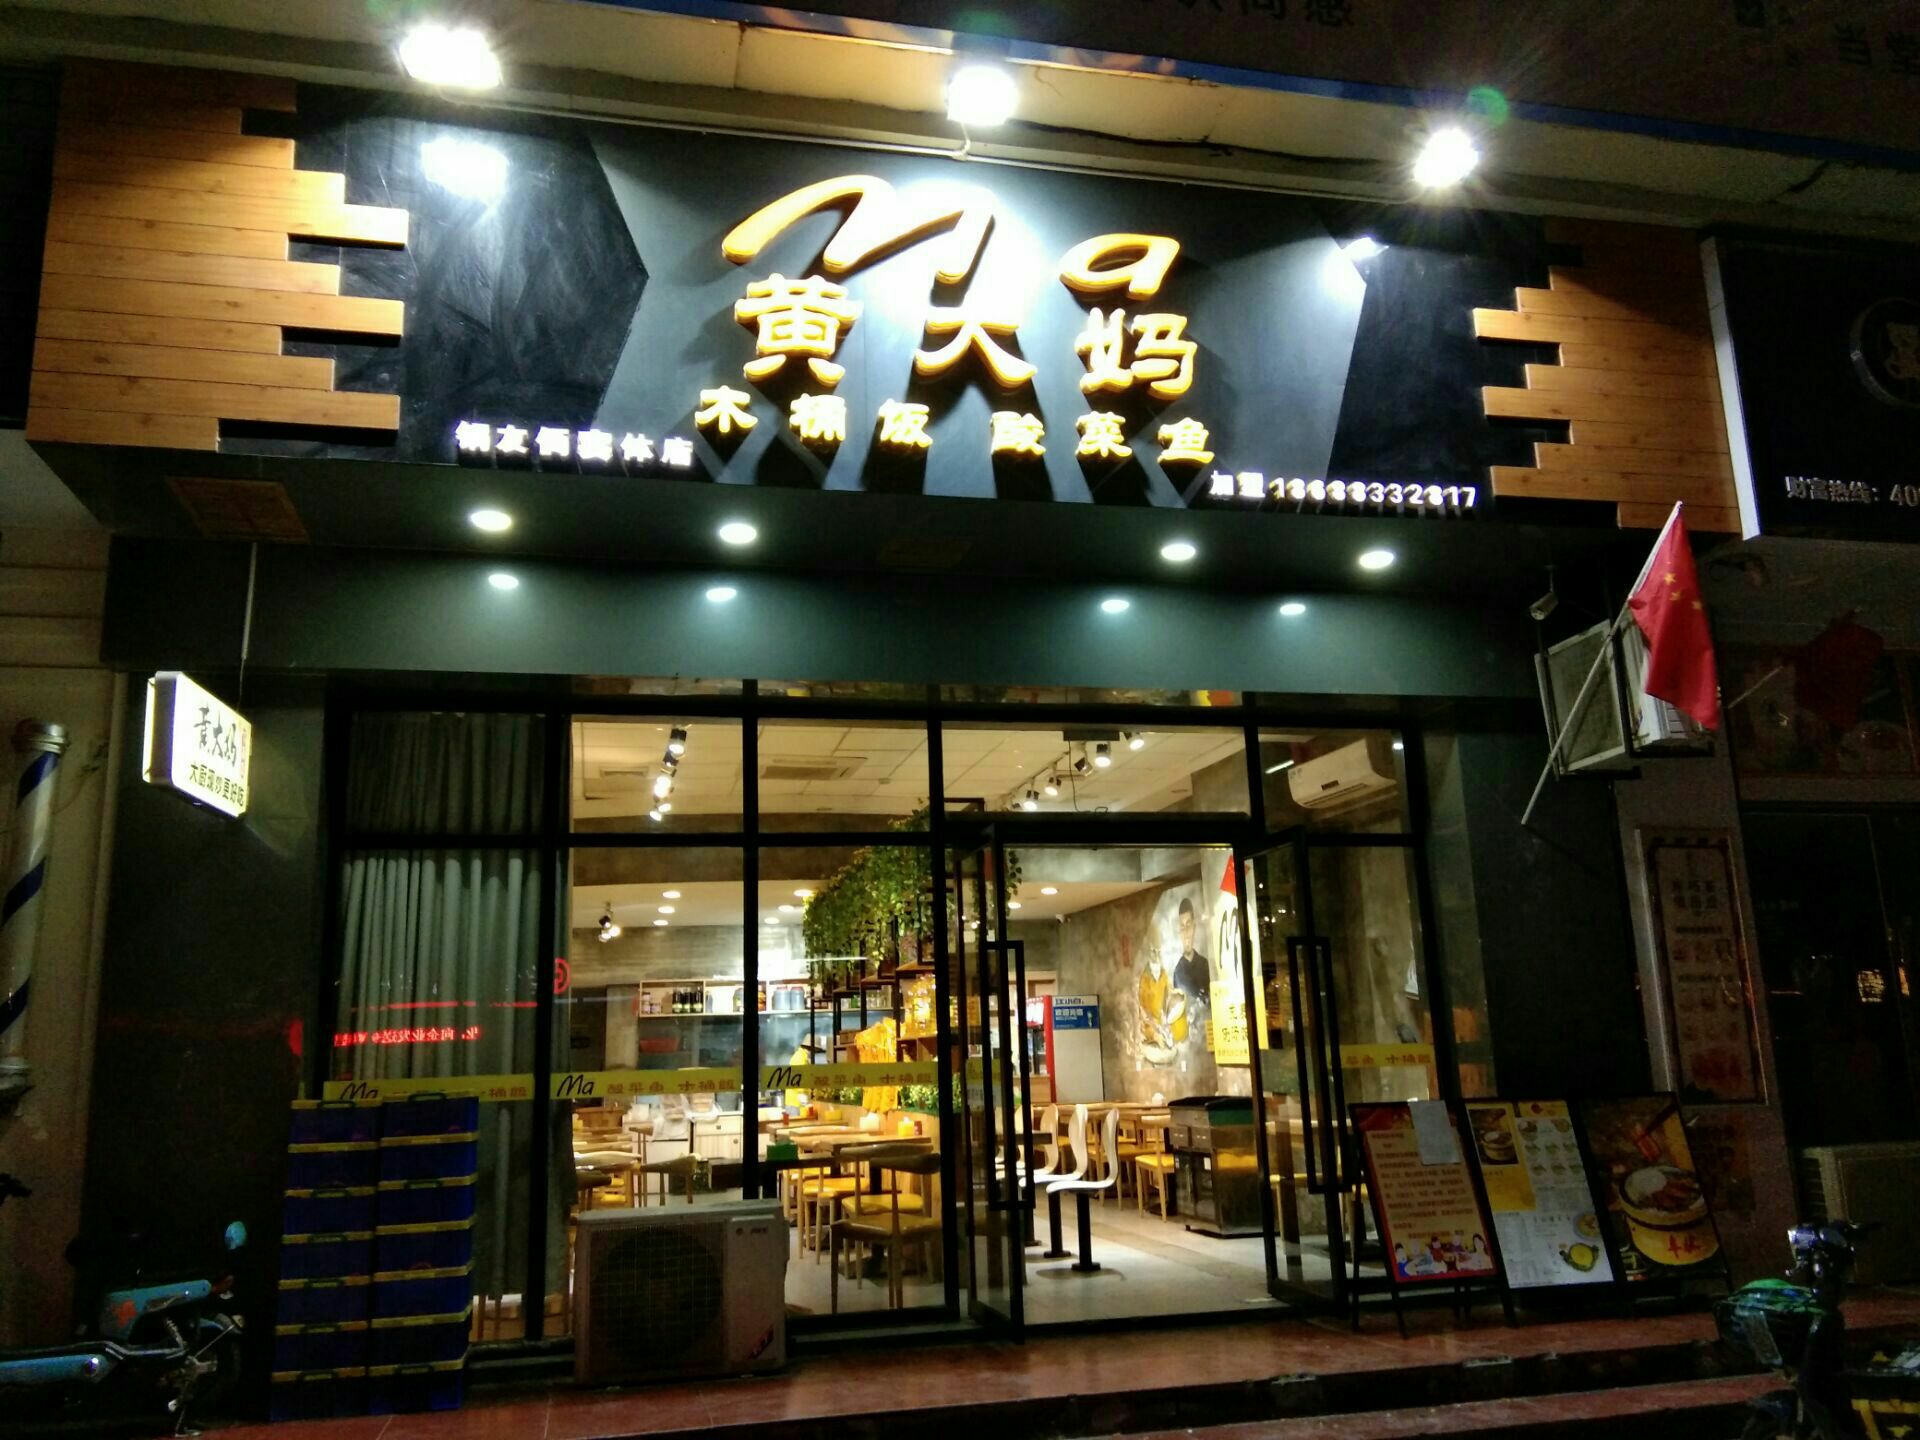 黄大妈木桶饭(惠州)――店家号称妈妈的味道与五常好大米饭,也的确是